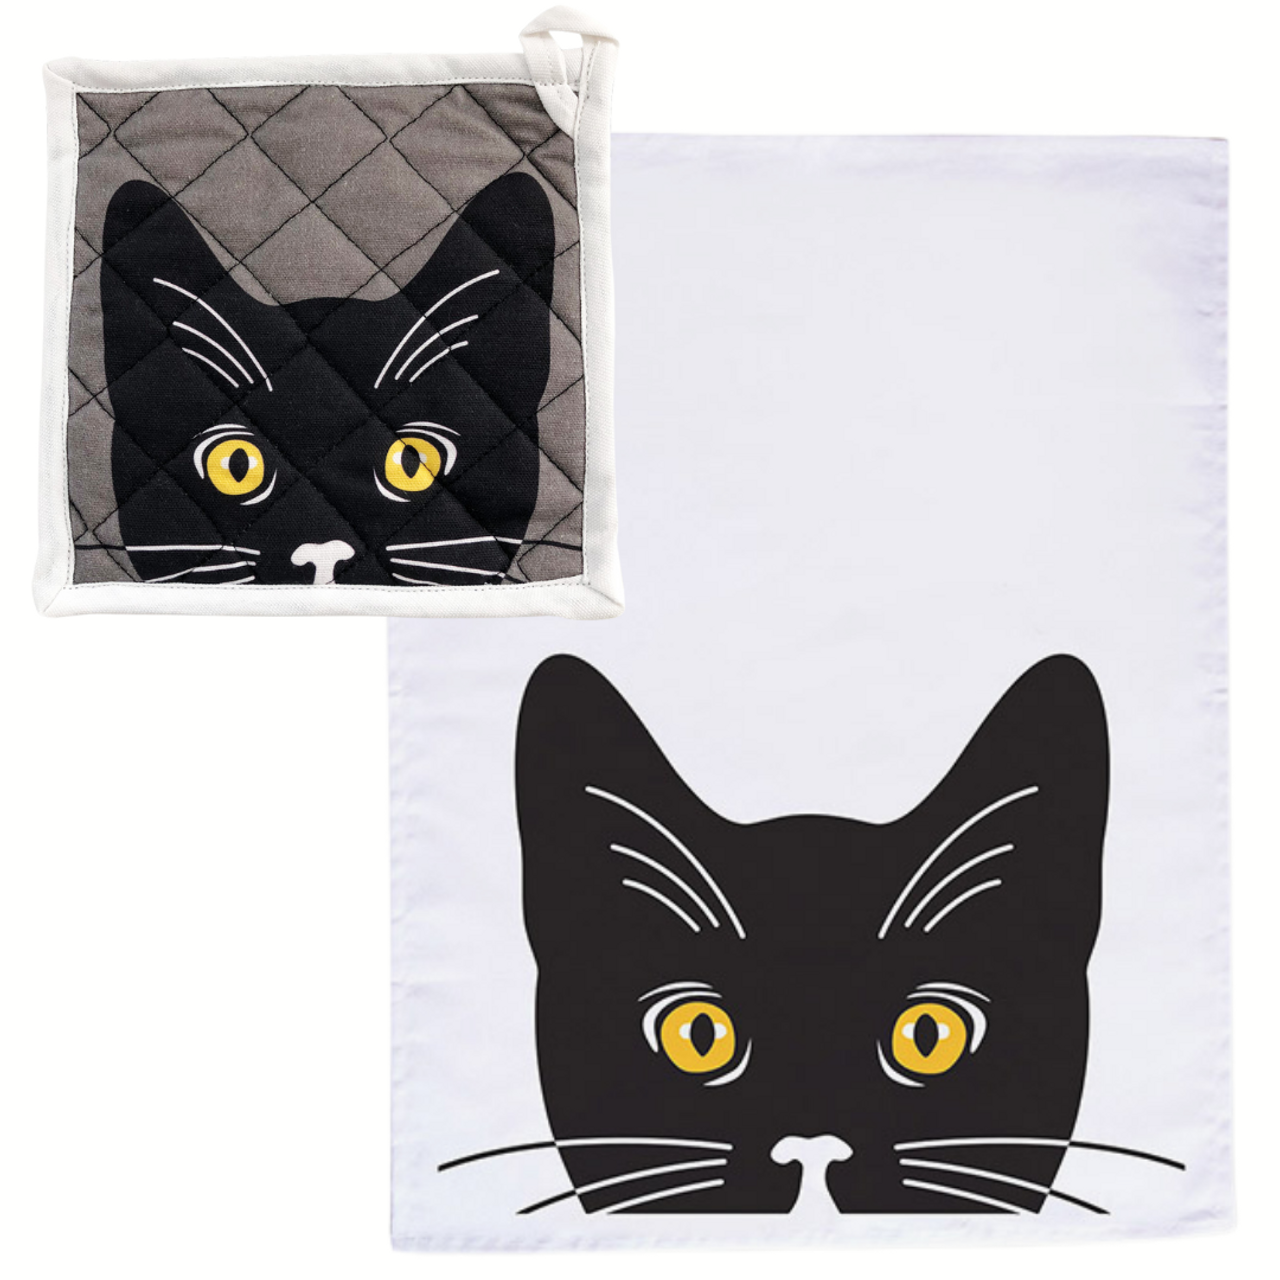 Black Cat with Golden Eyes Potholder/Towel Set